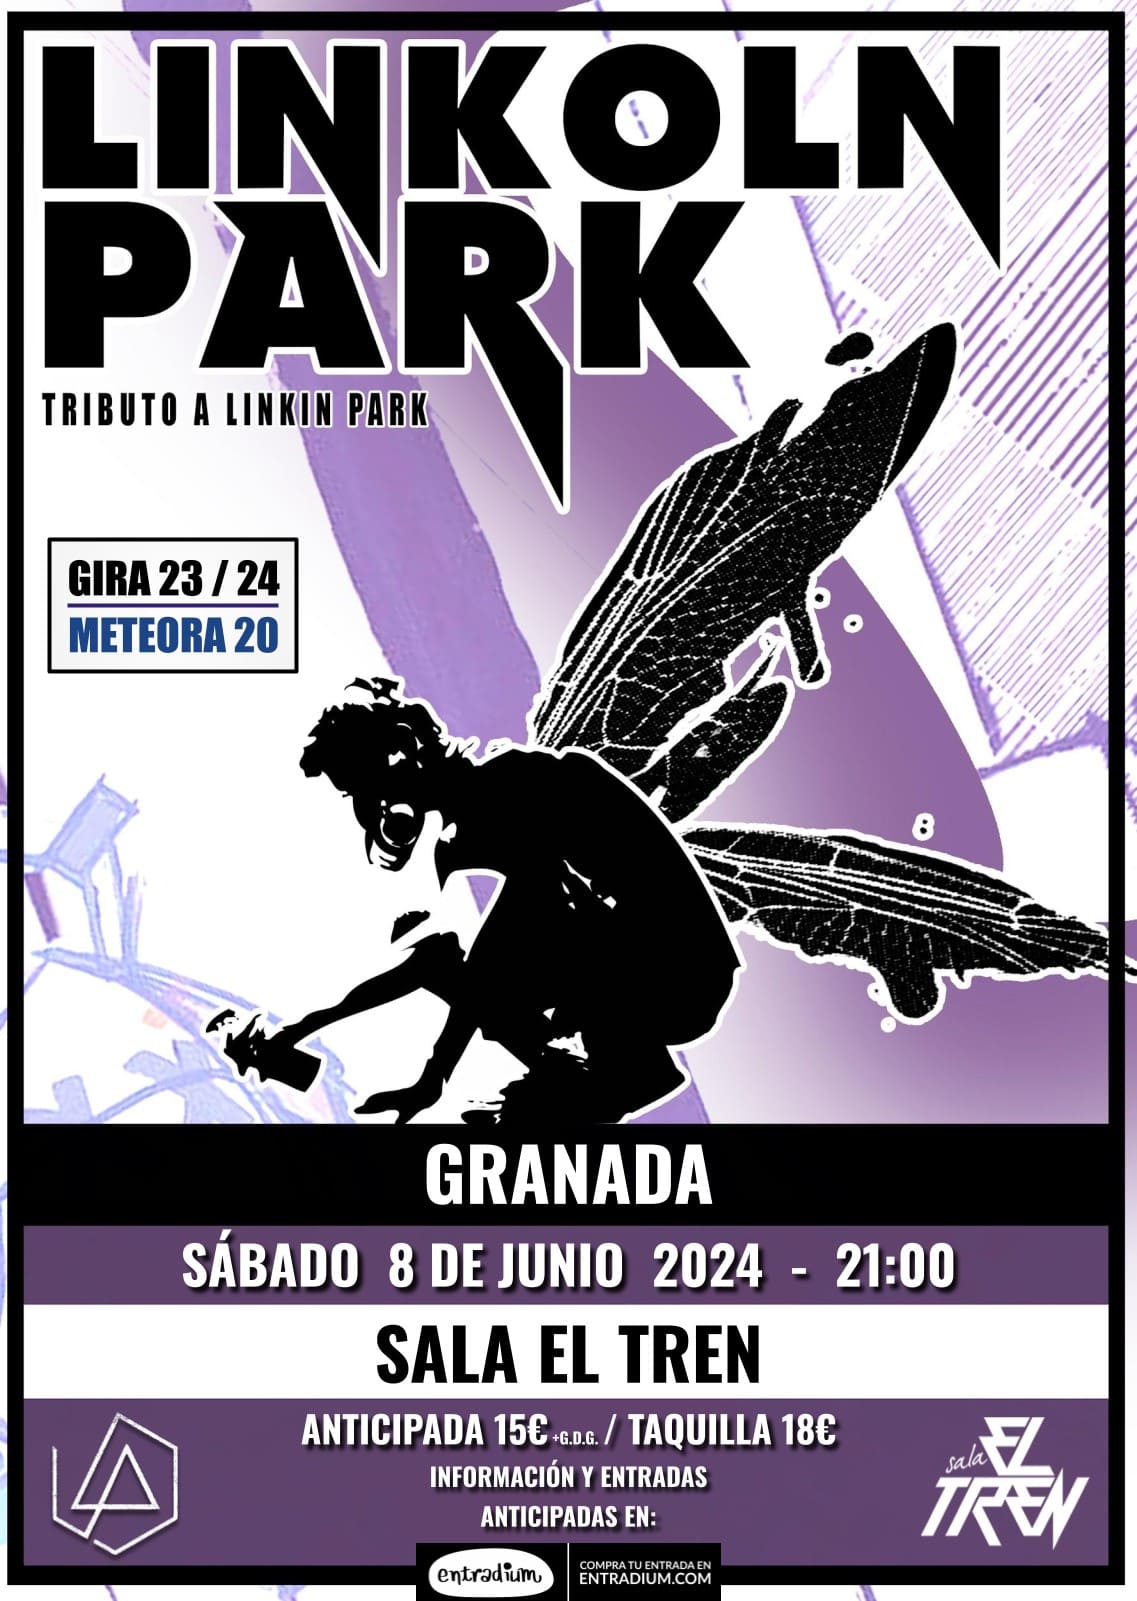 Cartel del concierto tributo a Linkoln Park en Granada el sábado 8 de junio de 2024 en Sala El Tren.